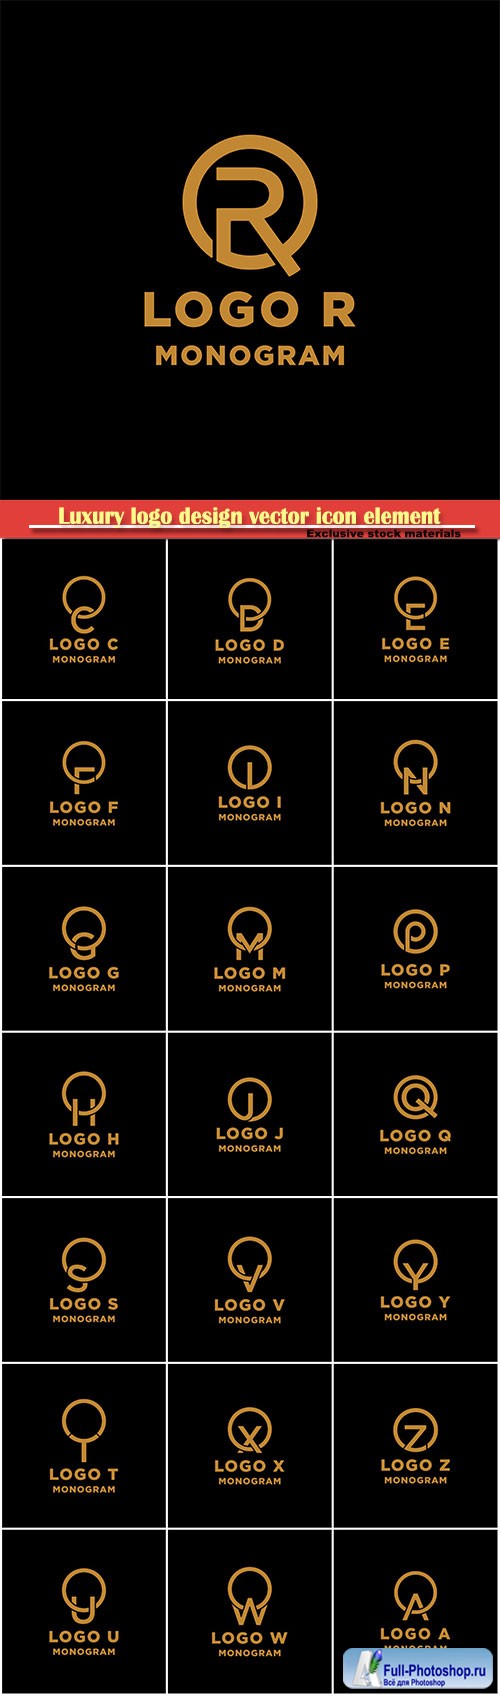 Luxury logo design vector icon element